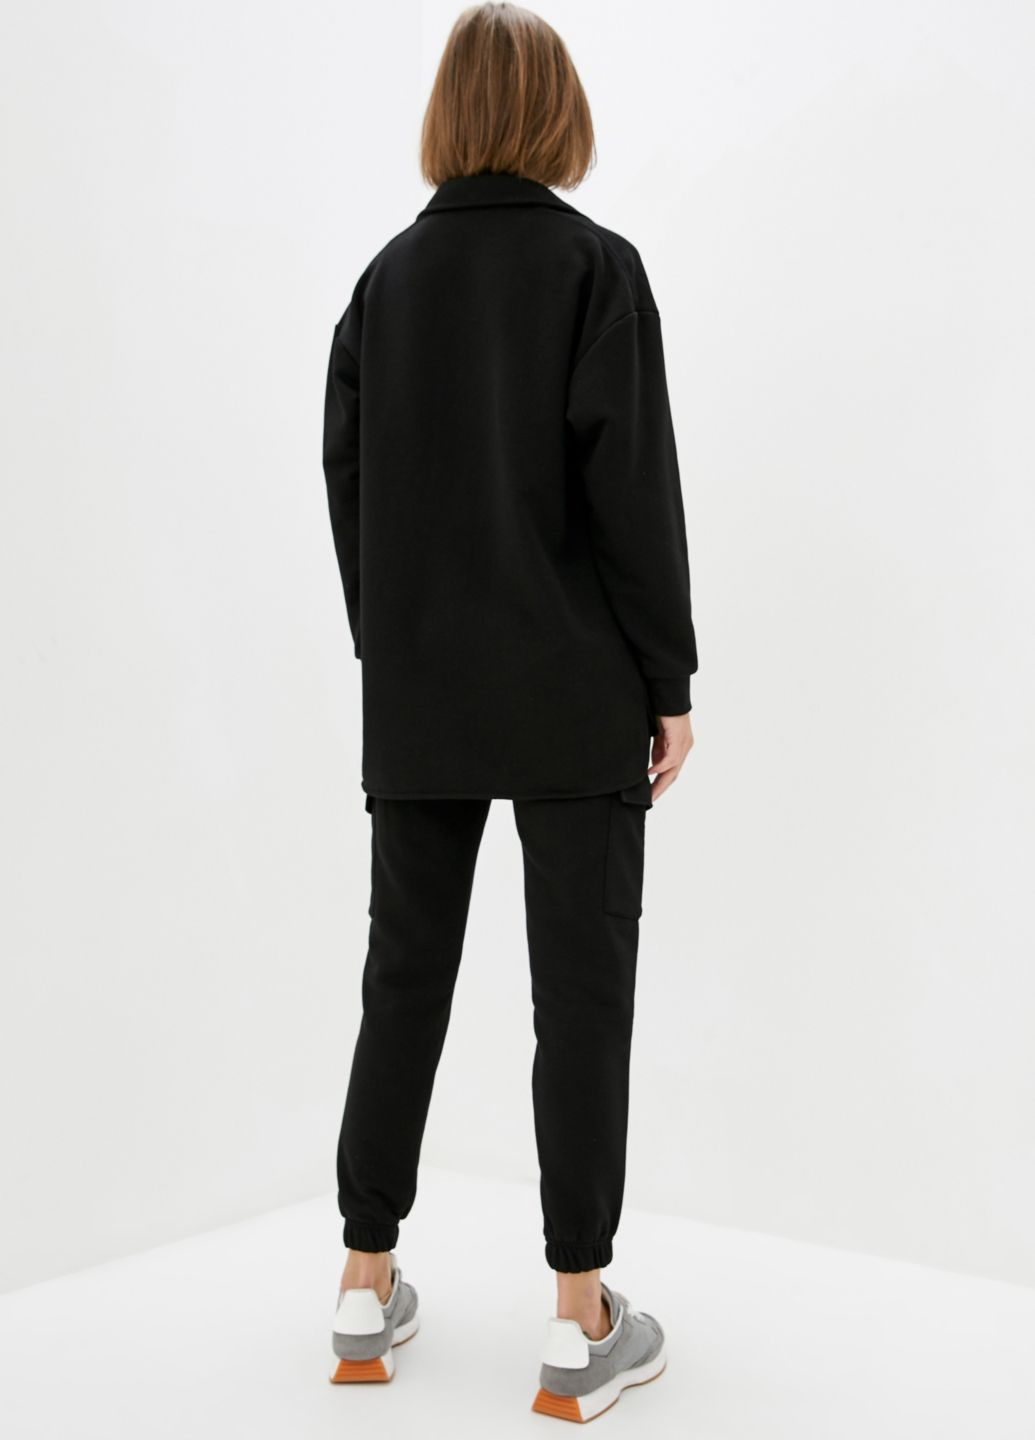 Купить Трикотажная рубашка женская оверсайз Merlini Барселона 200000055 - Черный, 42-44 в интернет-магазине